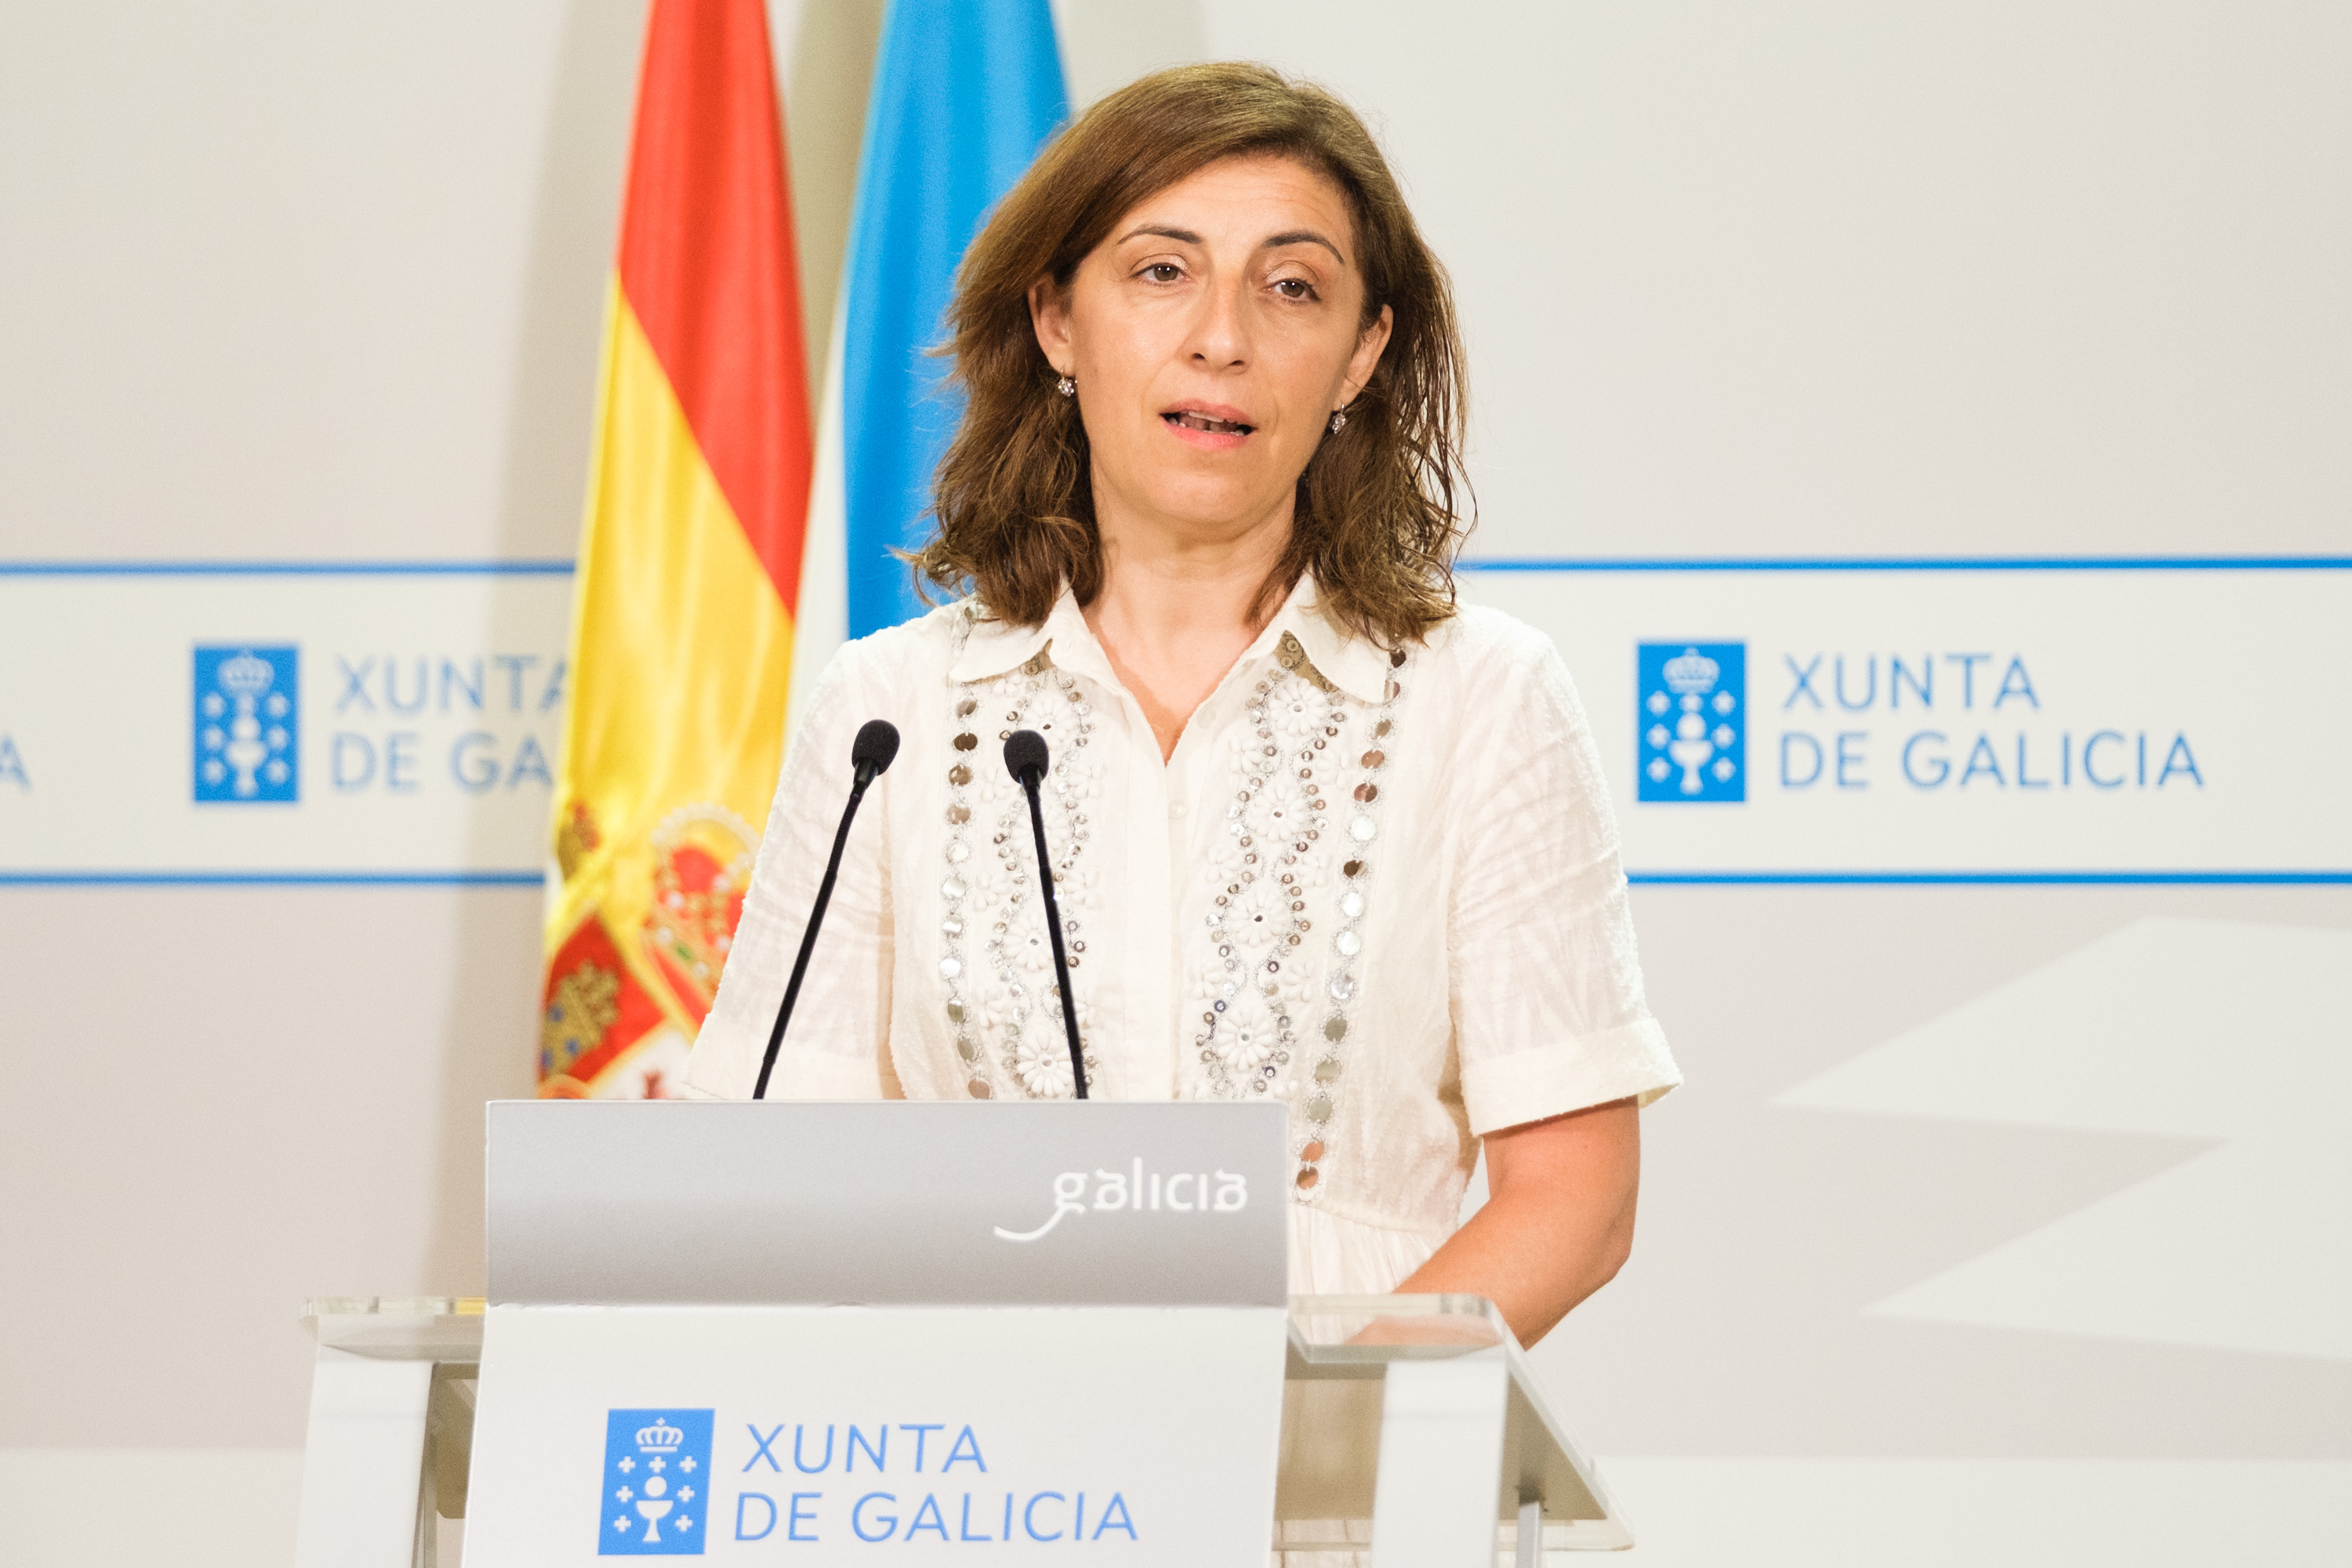 Image 4 of article Rueda anuncia unha Lei de administración ambiental simplificada que adaptará o marco normativo galego aos retos climáticos e reforzará a seguridade xurídica de promotores privados e administracións